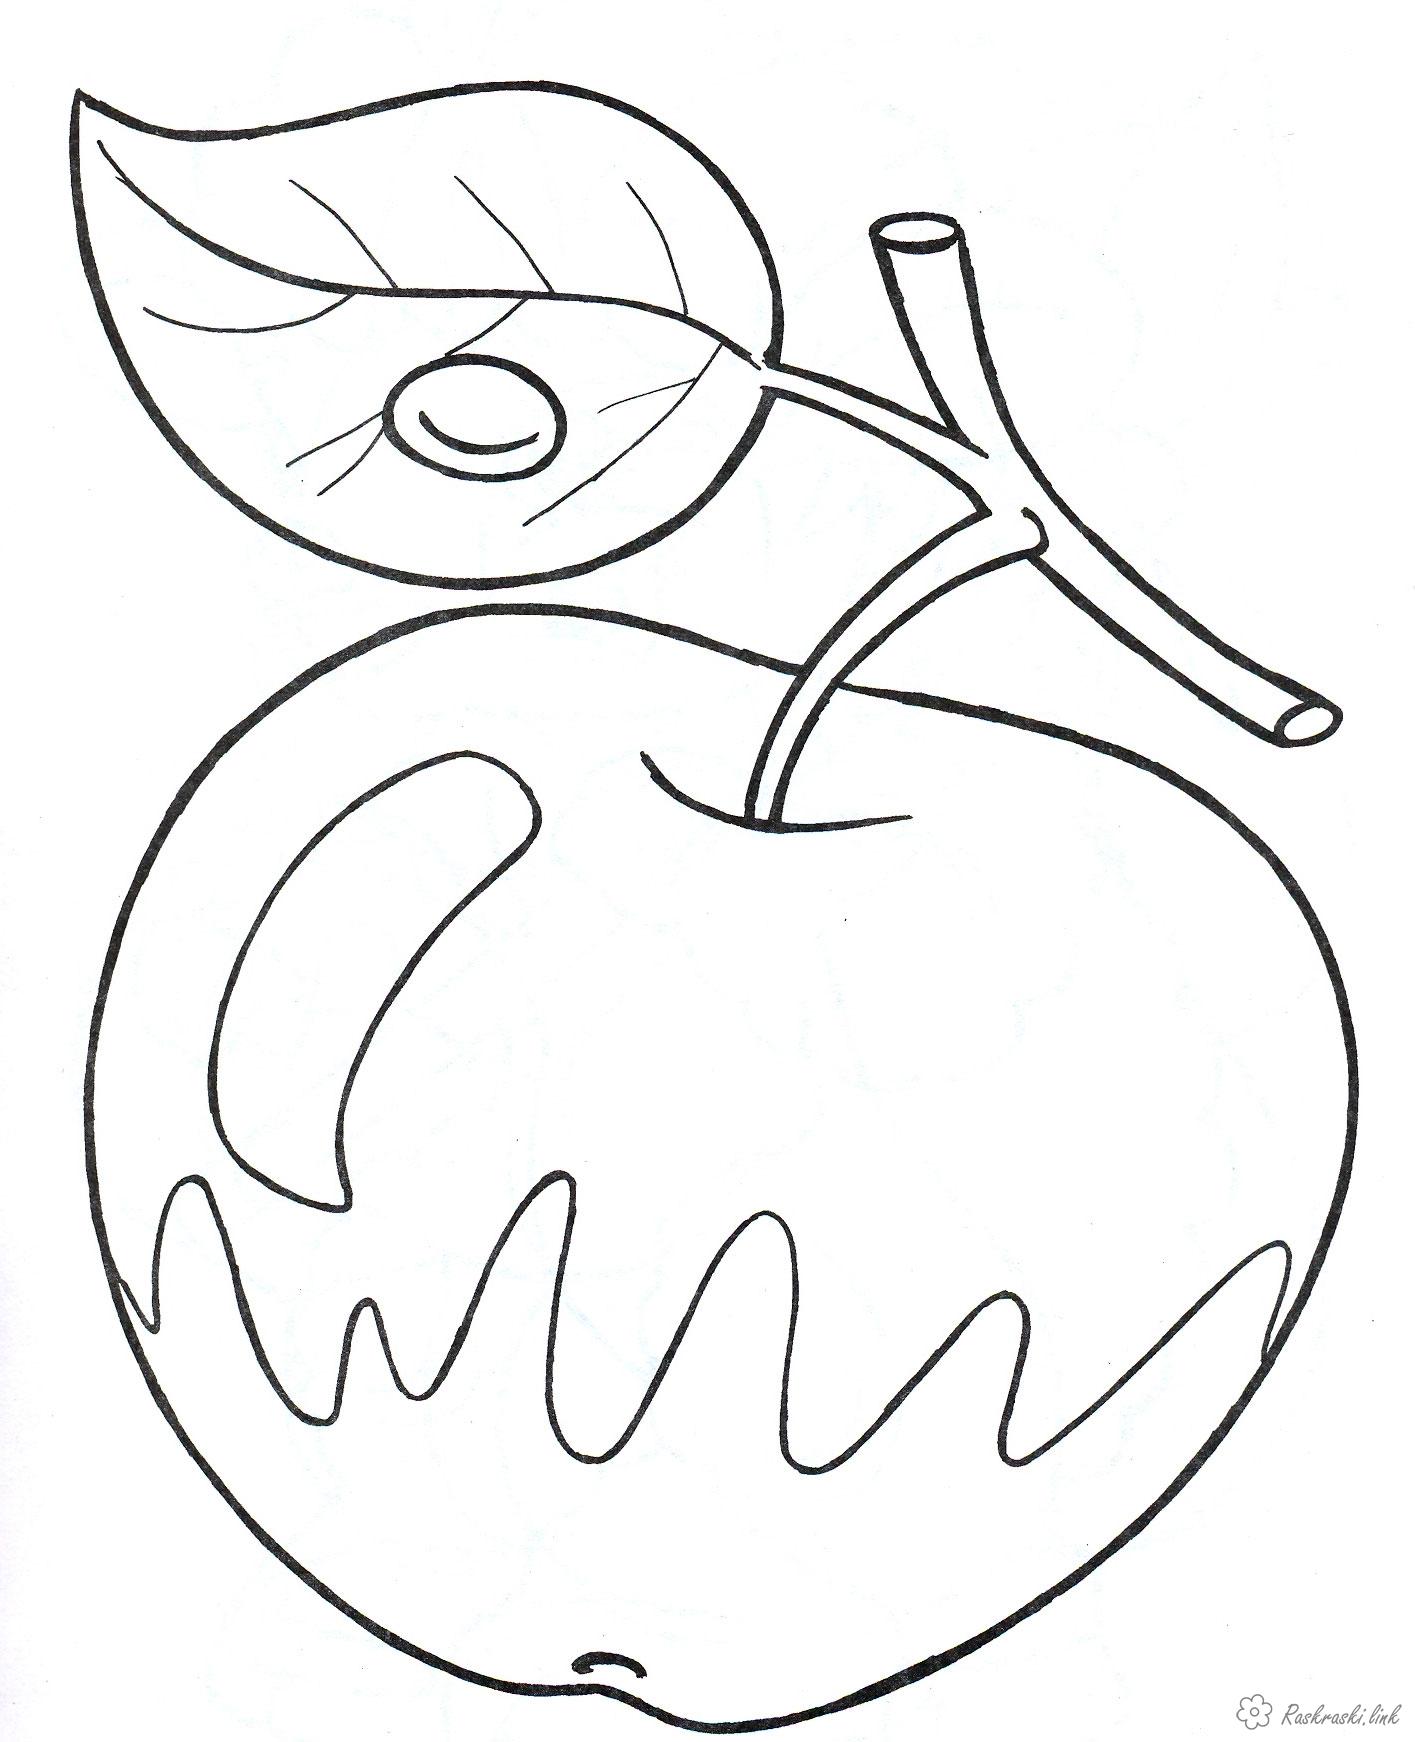 Раскраски Яблоки - красочные изображения яблок для детей (яблоки)